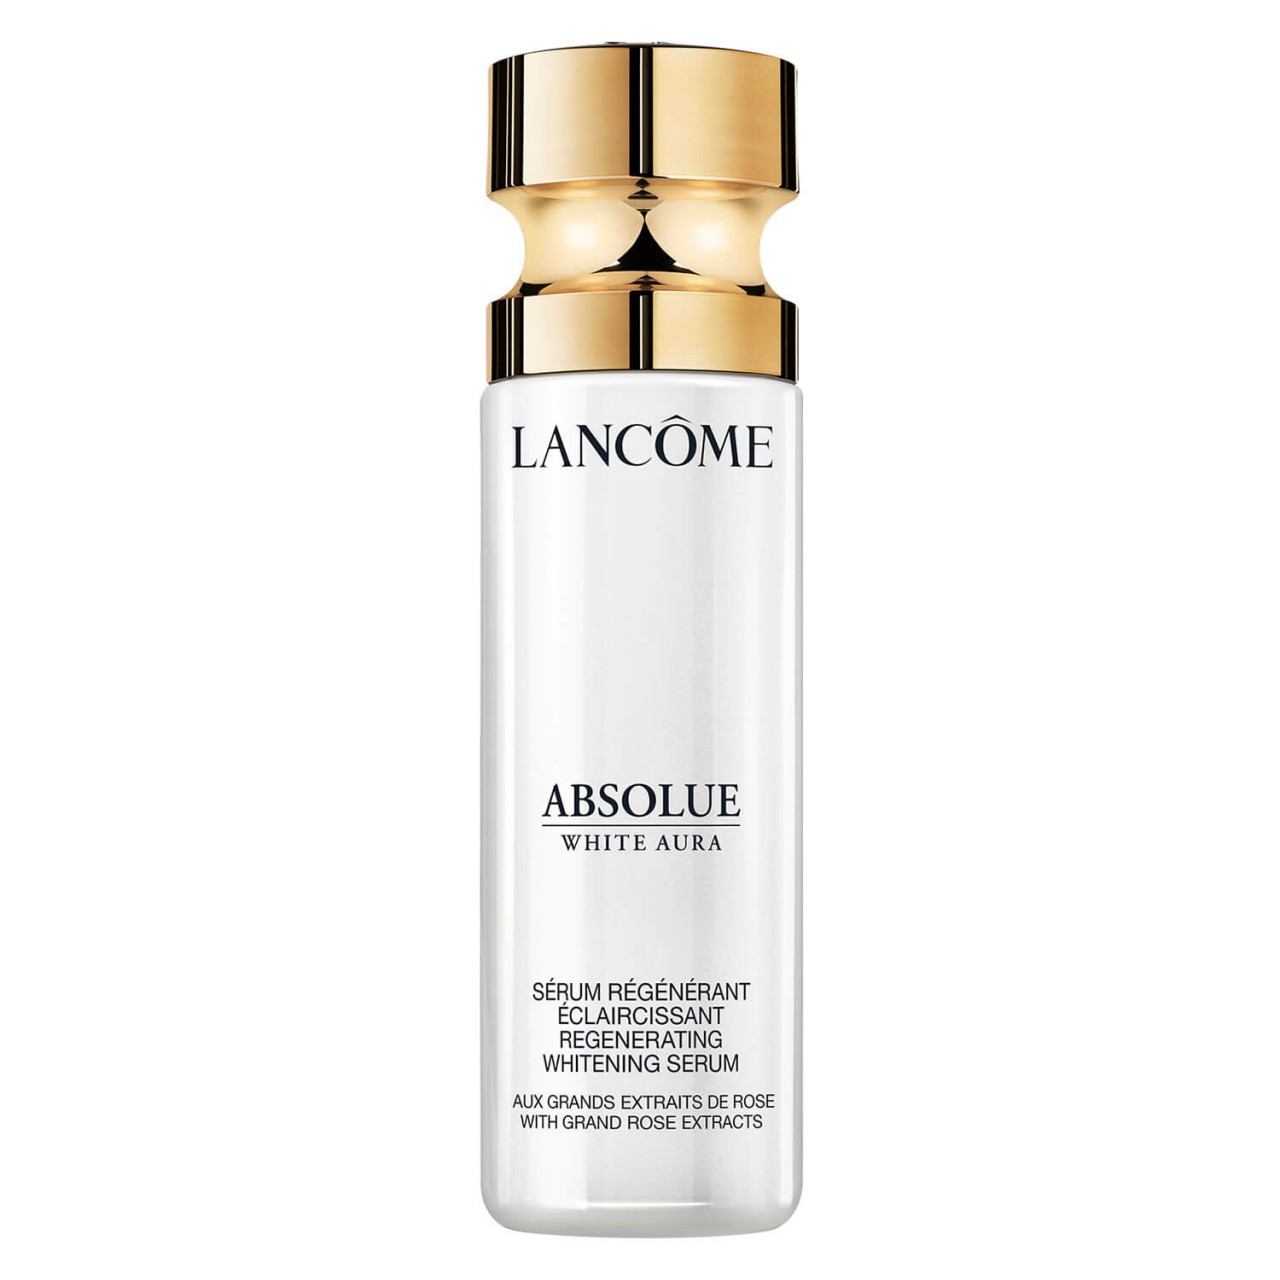 ABSOLUE - White Aura Whitening Serum von Lancôme